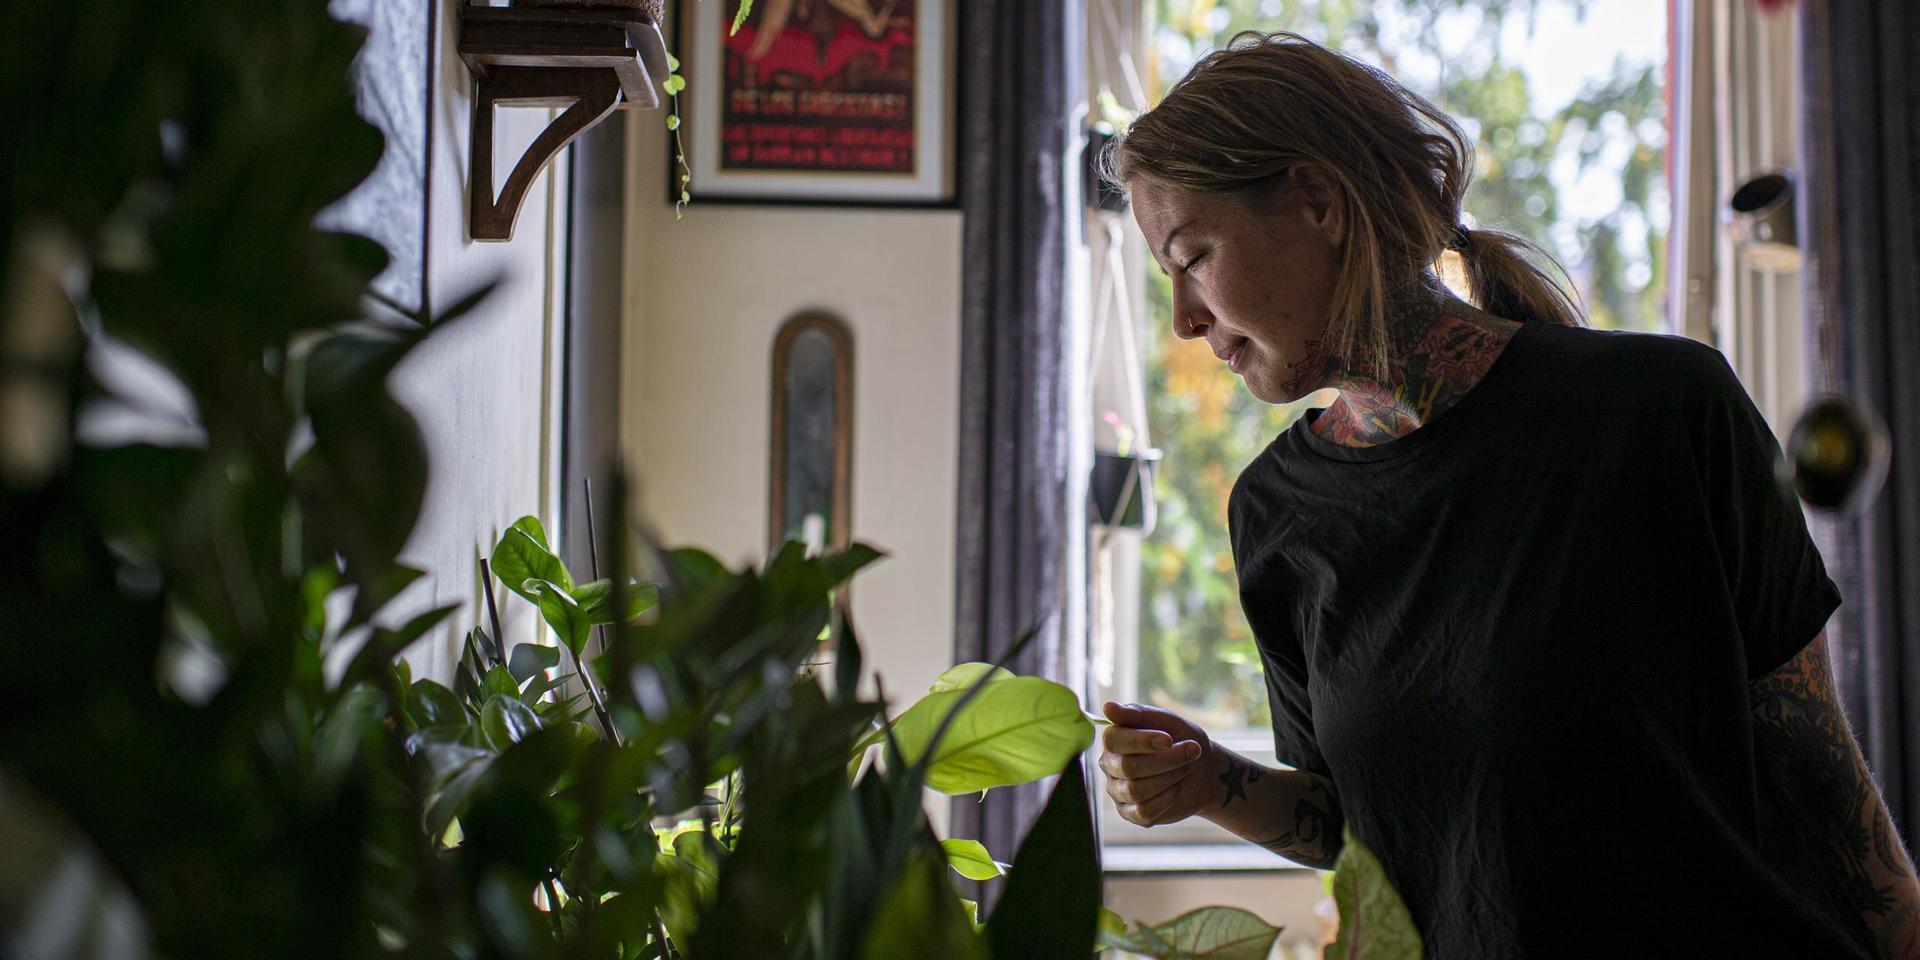 Växtentusiasten Mysan Hagman inspekterar en växt ur samlingen i köket hemma i lägenheten.